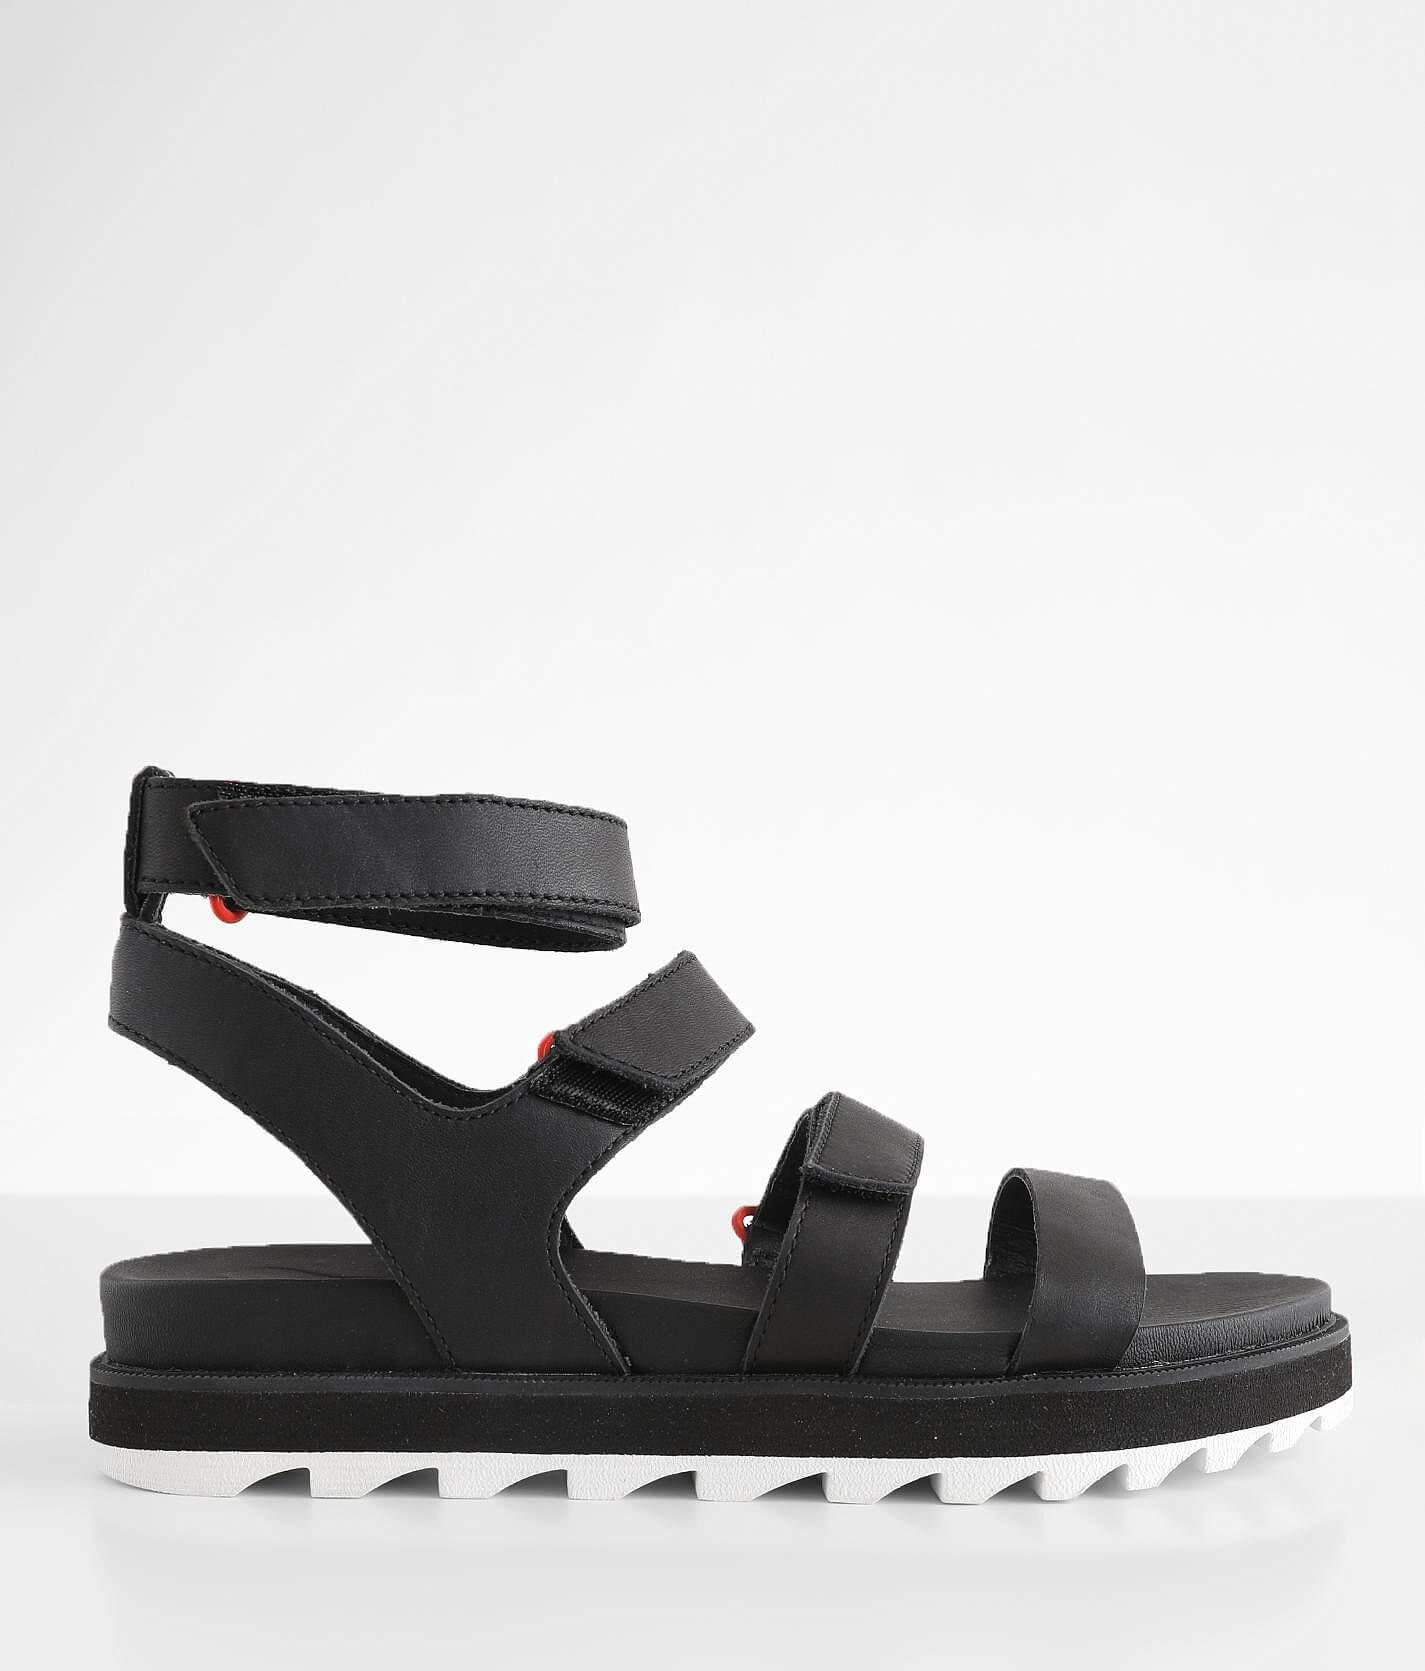 Shiloh Multi-Strap Black Leather Sandals